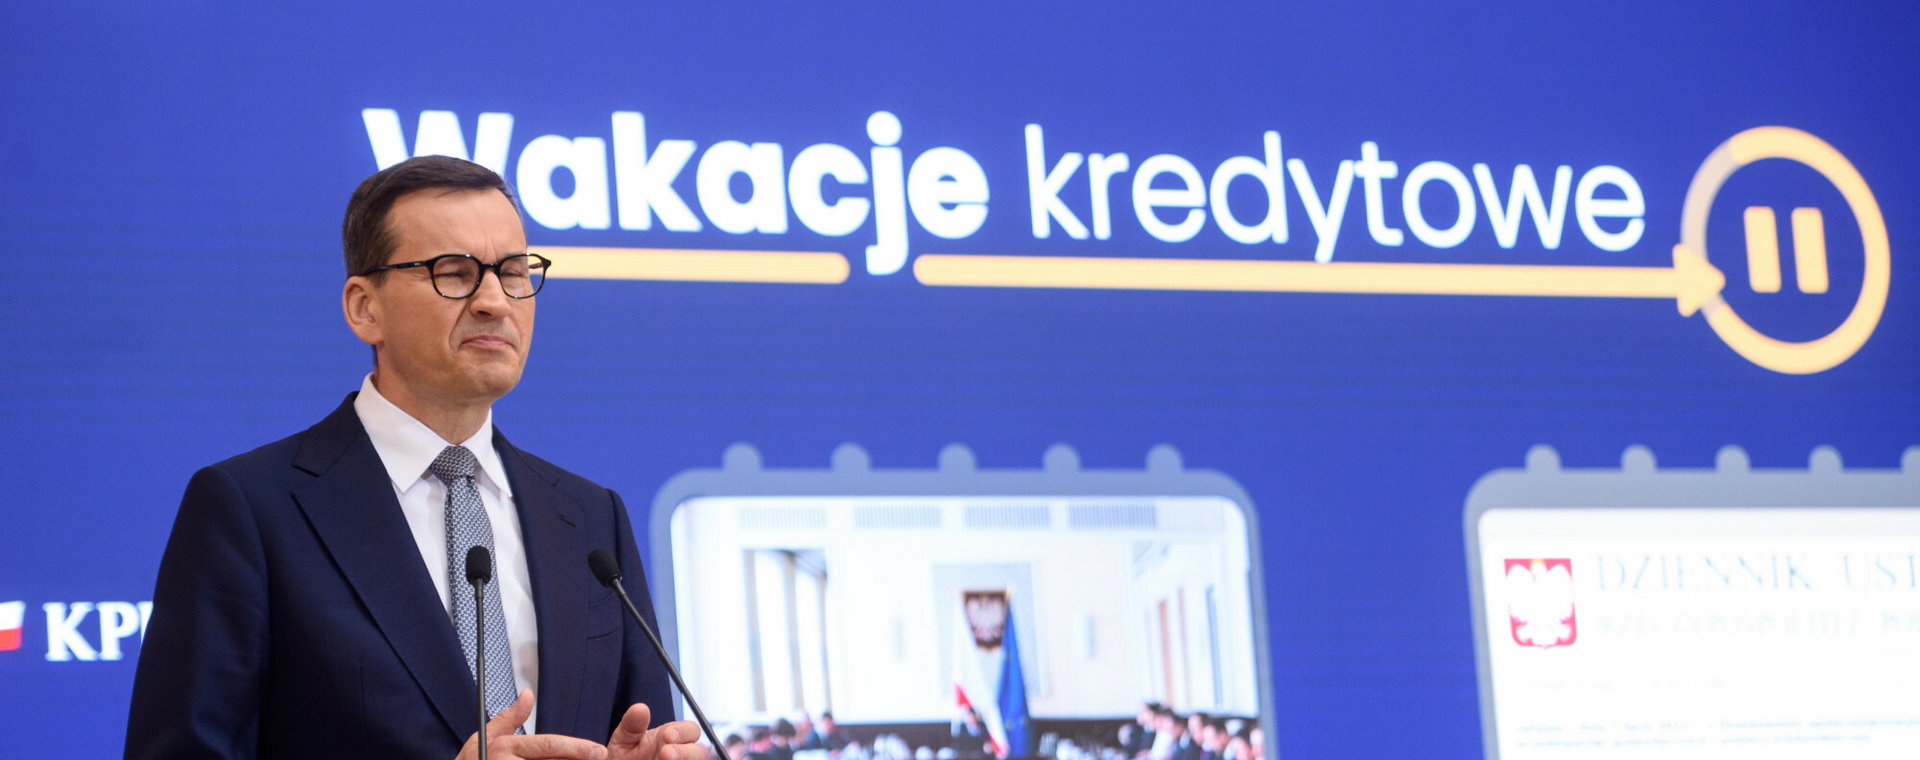 Premier Mateusz Morawiecki podczas konferencji poświęconej rozwiązaniom dla kredytobiorców.